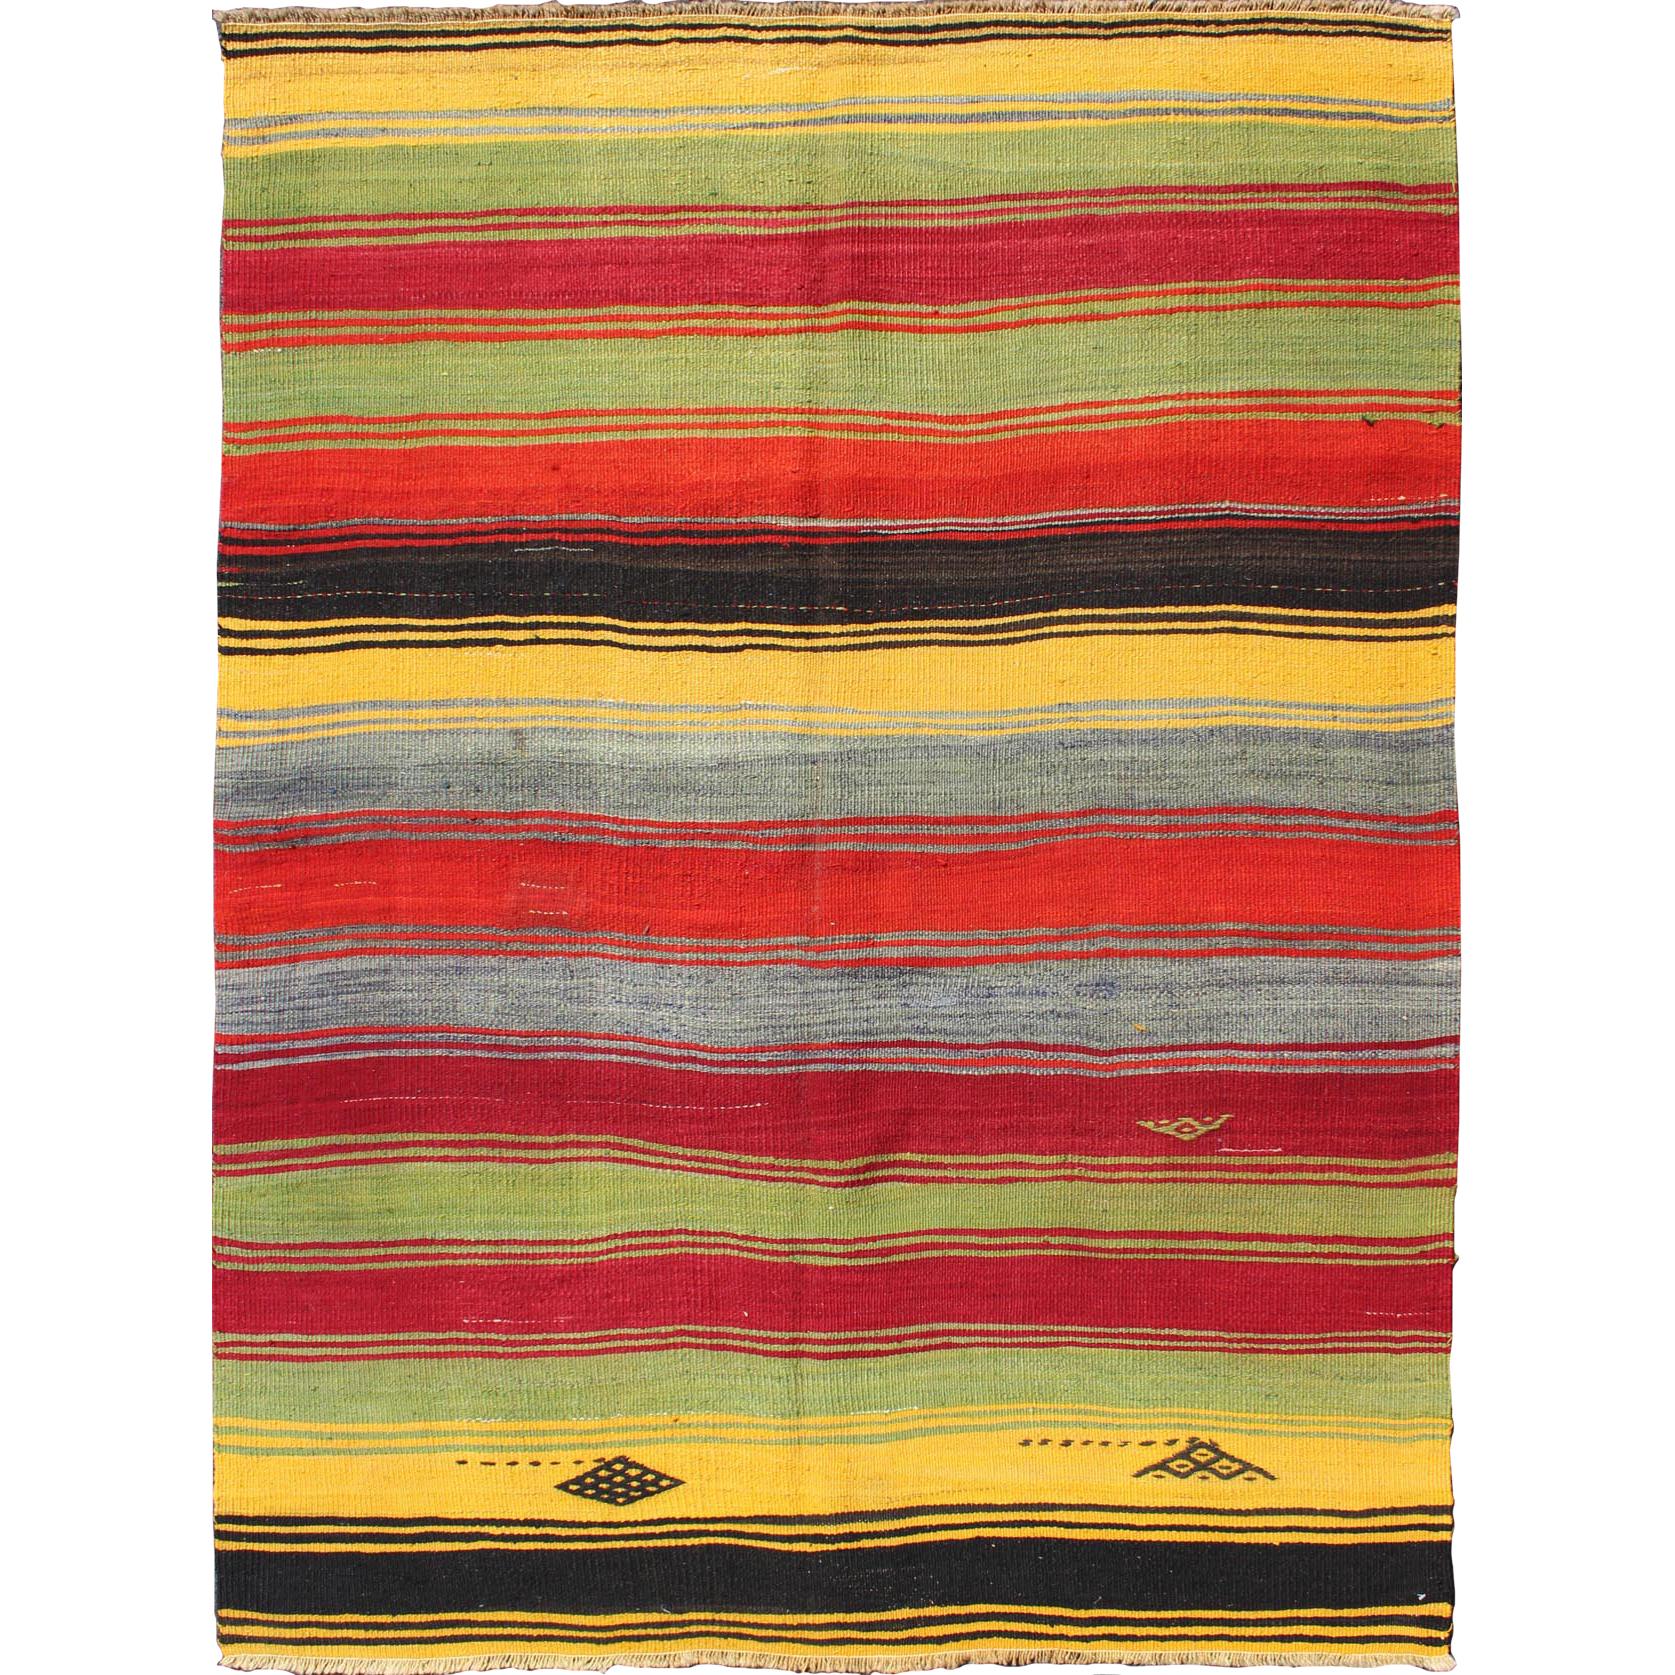 Colorful Vintage Turkish Kilim Rug with Subtle Tribal Shapes and Stripes Design For Sale